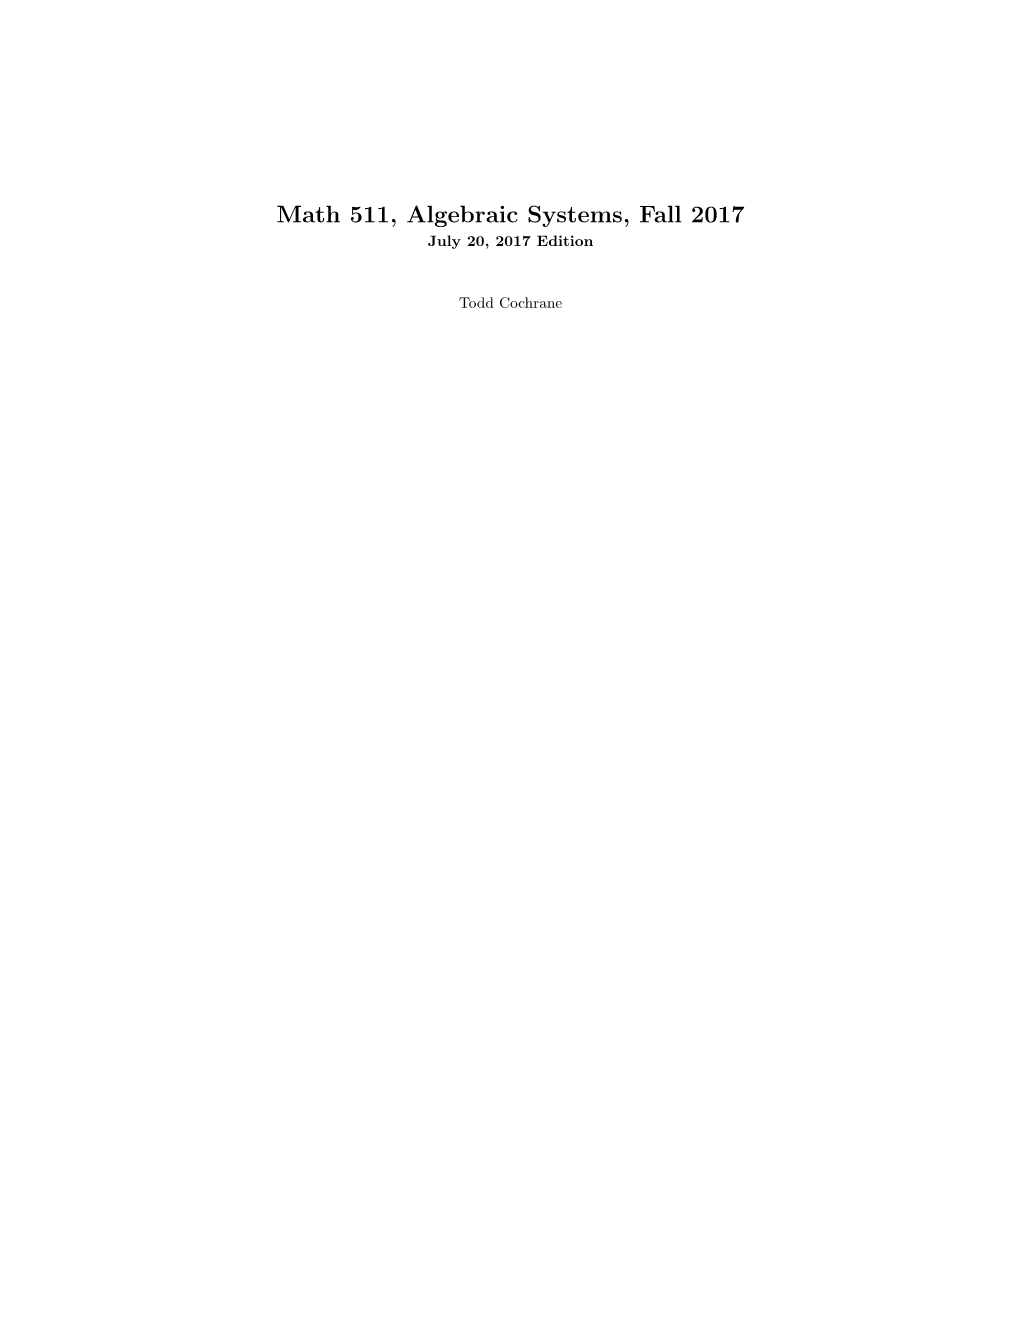 Math 511, Algebraic Systems, Fall 2017 July 20, 2017 Edition